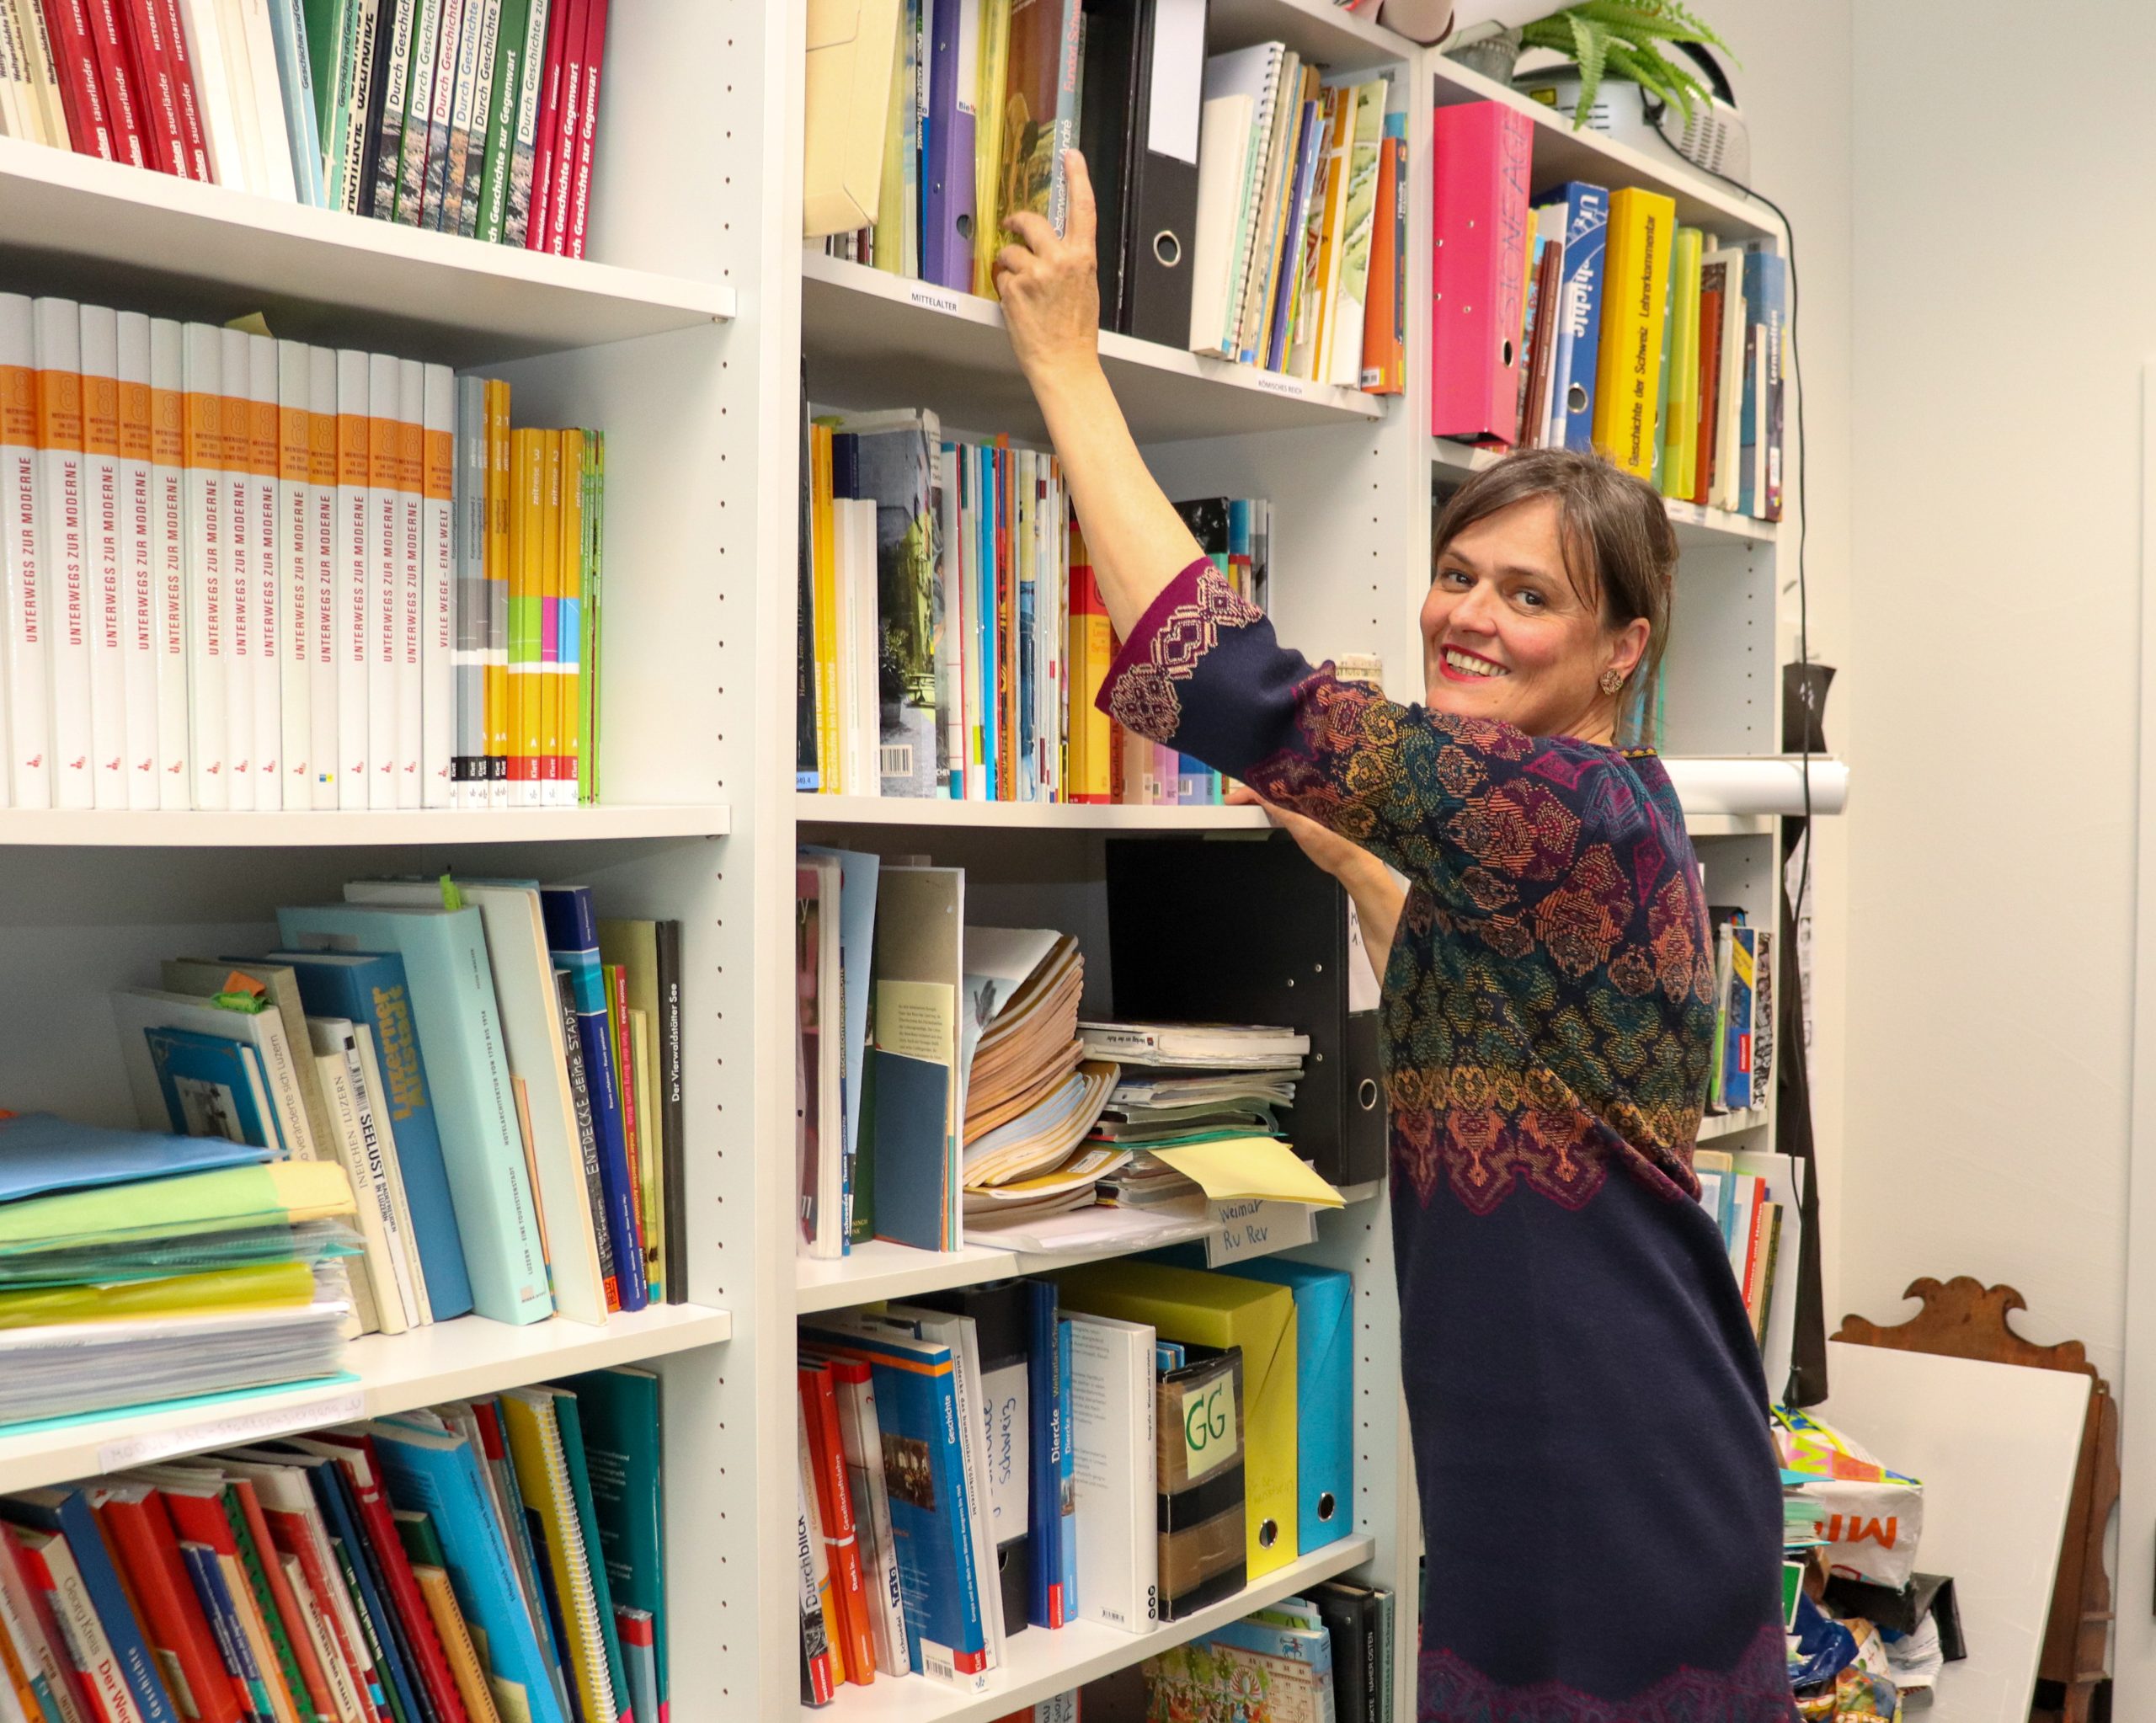 Sabine Ziegler, Dozentin für Geschichtsdidaktik steht in ihrem Büro vor dem Bücherregal und sucht ein Buch aus.